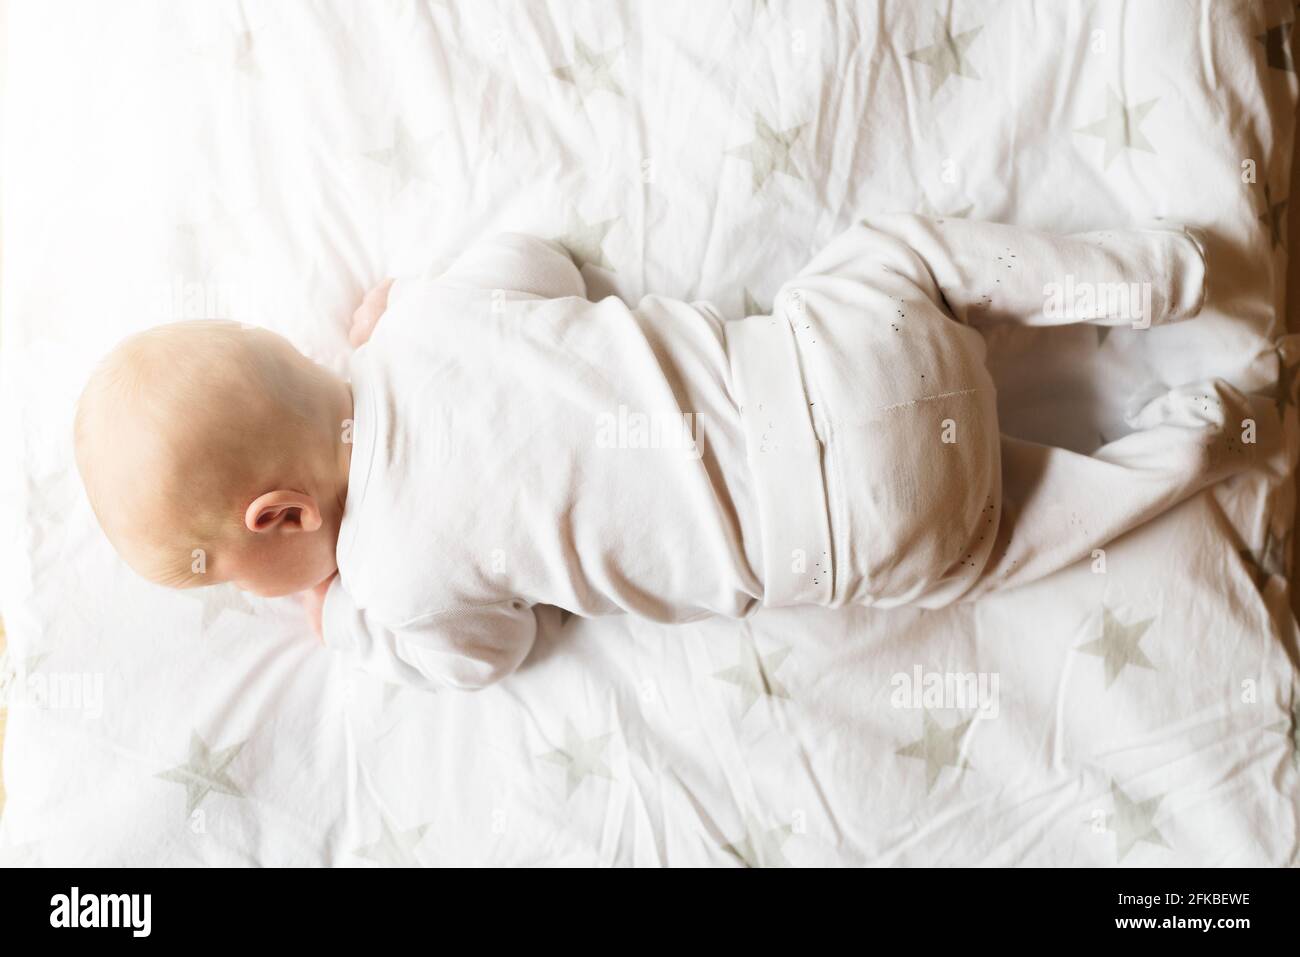 justo encima de la vista de un bebé de un mes en manta tratando de levantar la cabeza Foto de stock